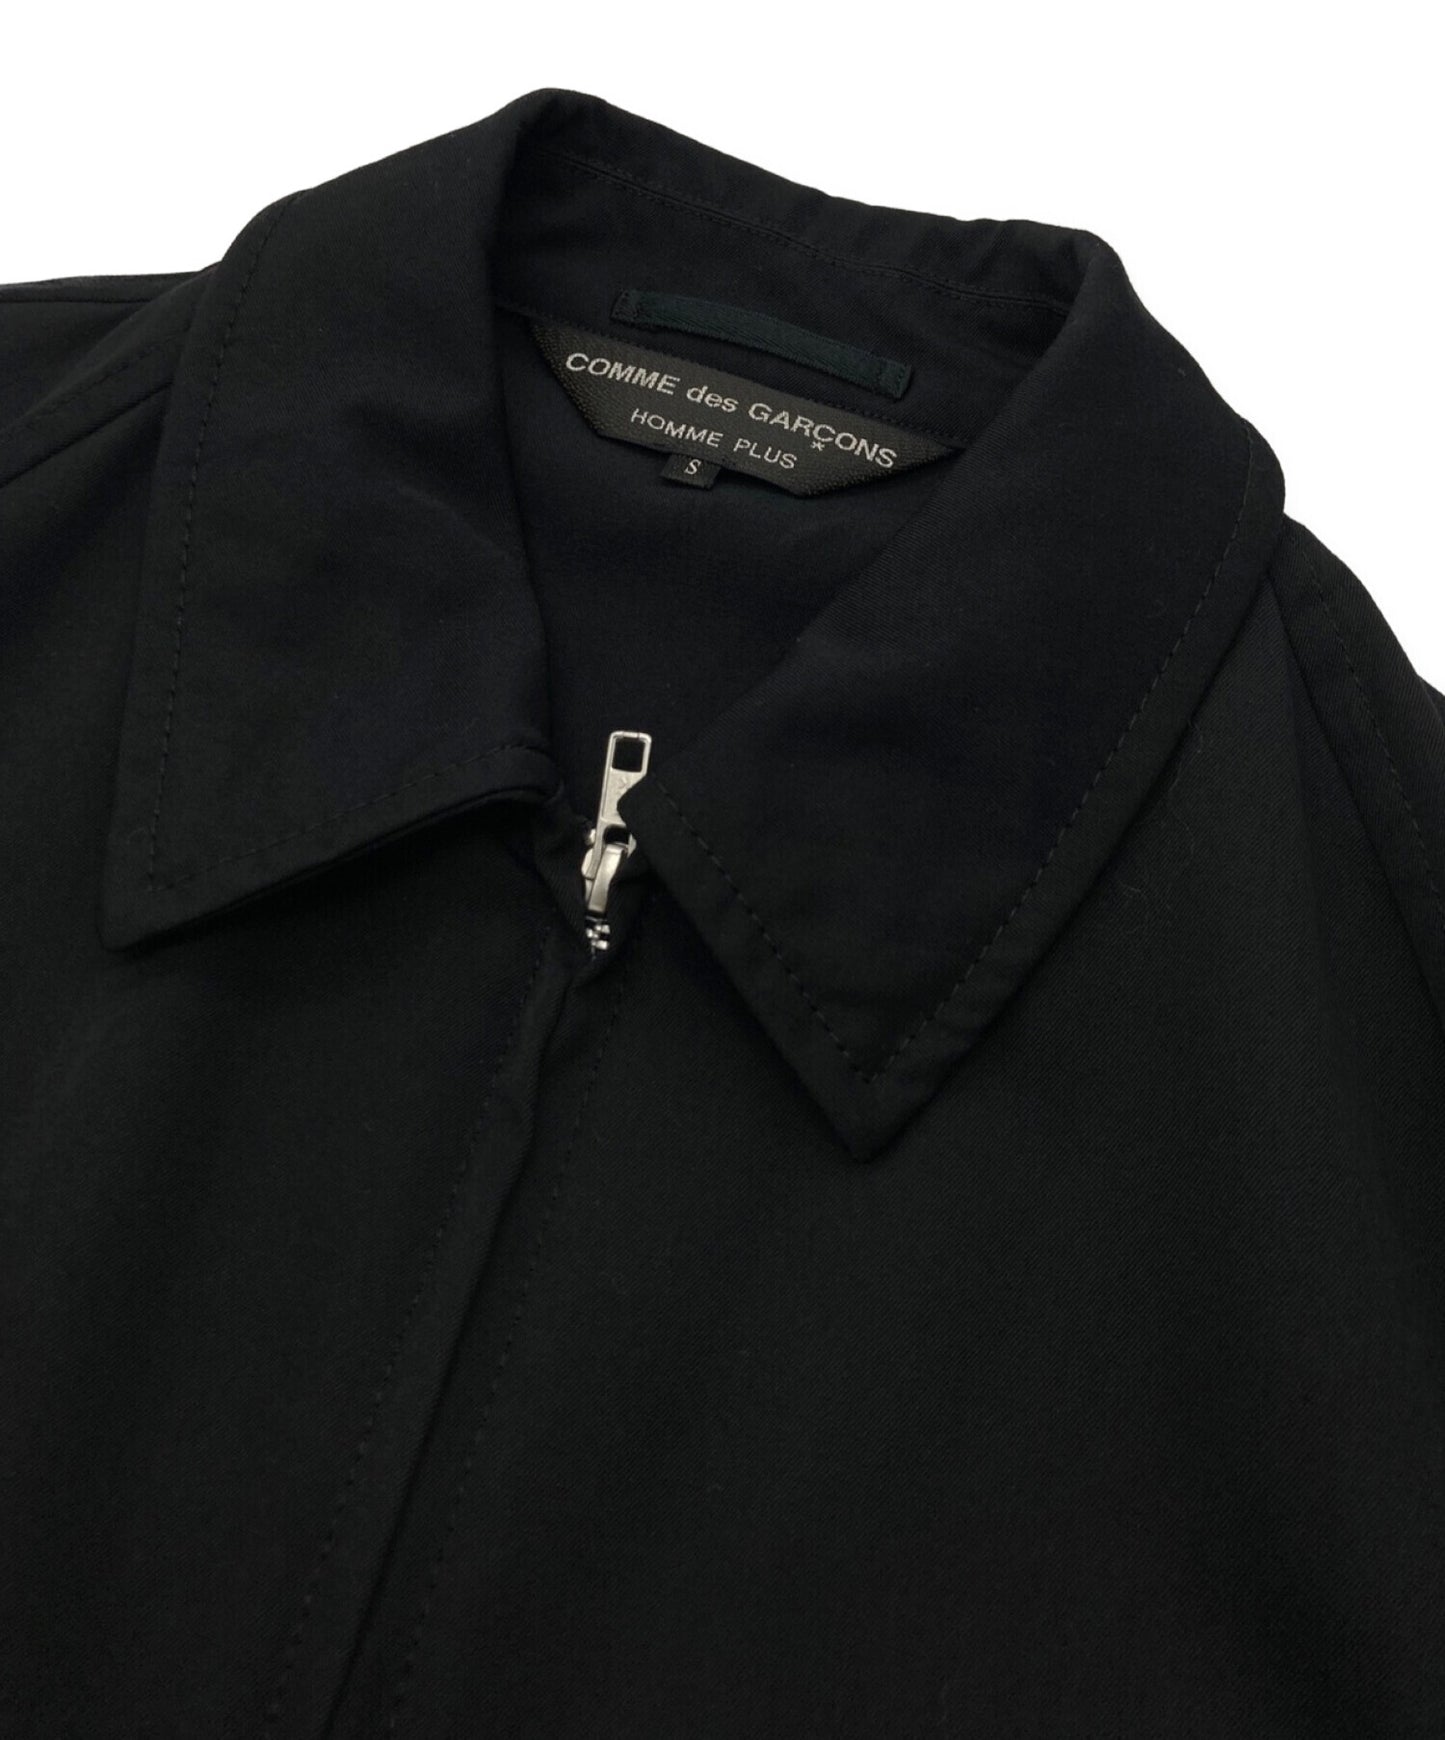 COMME des GARCONS Homme Plus Wool gaber zip-up jacket PE-J081